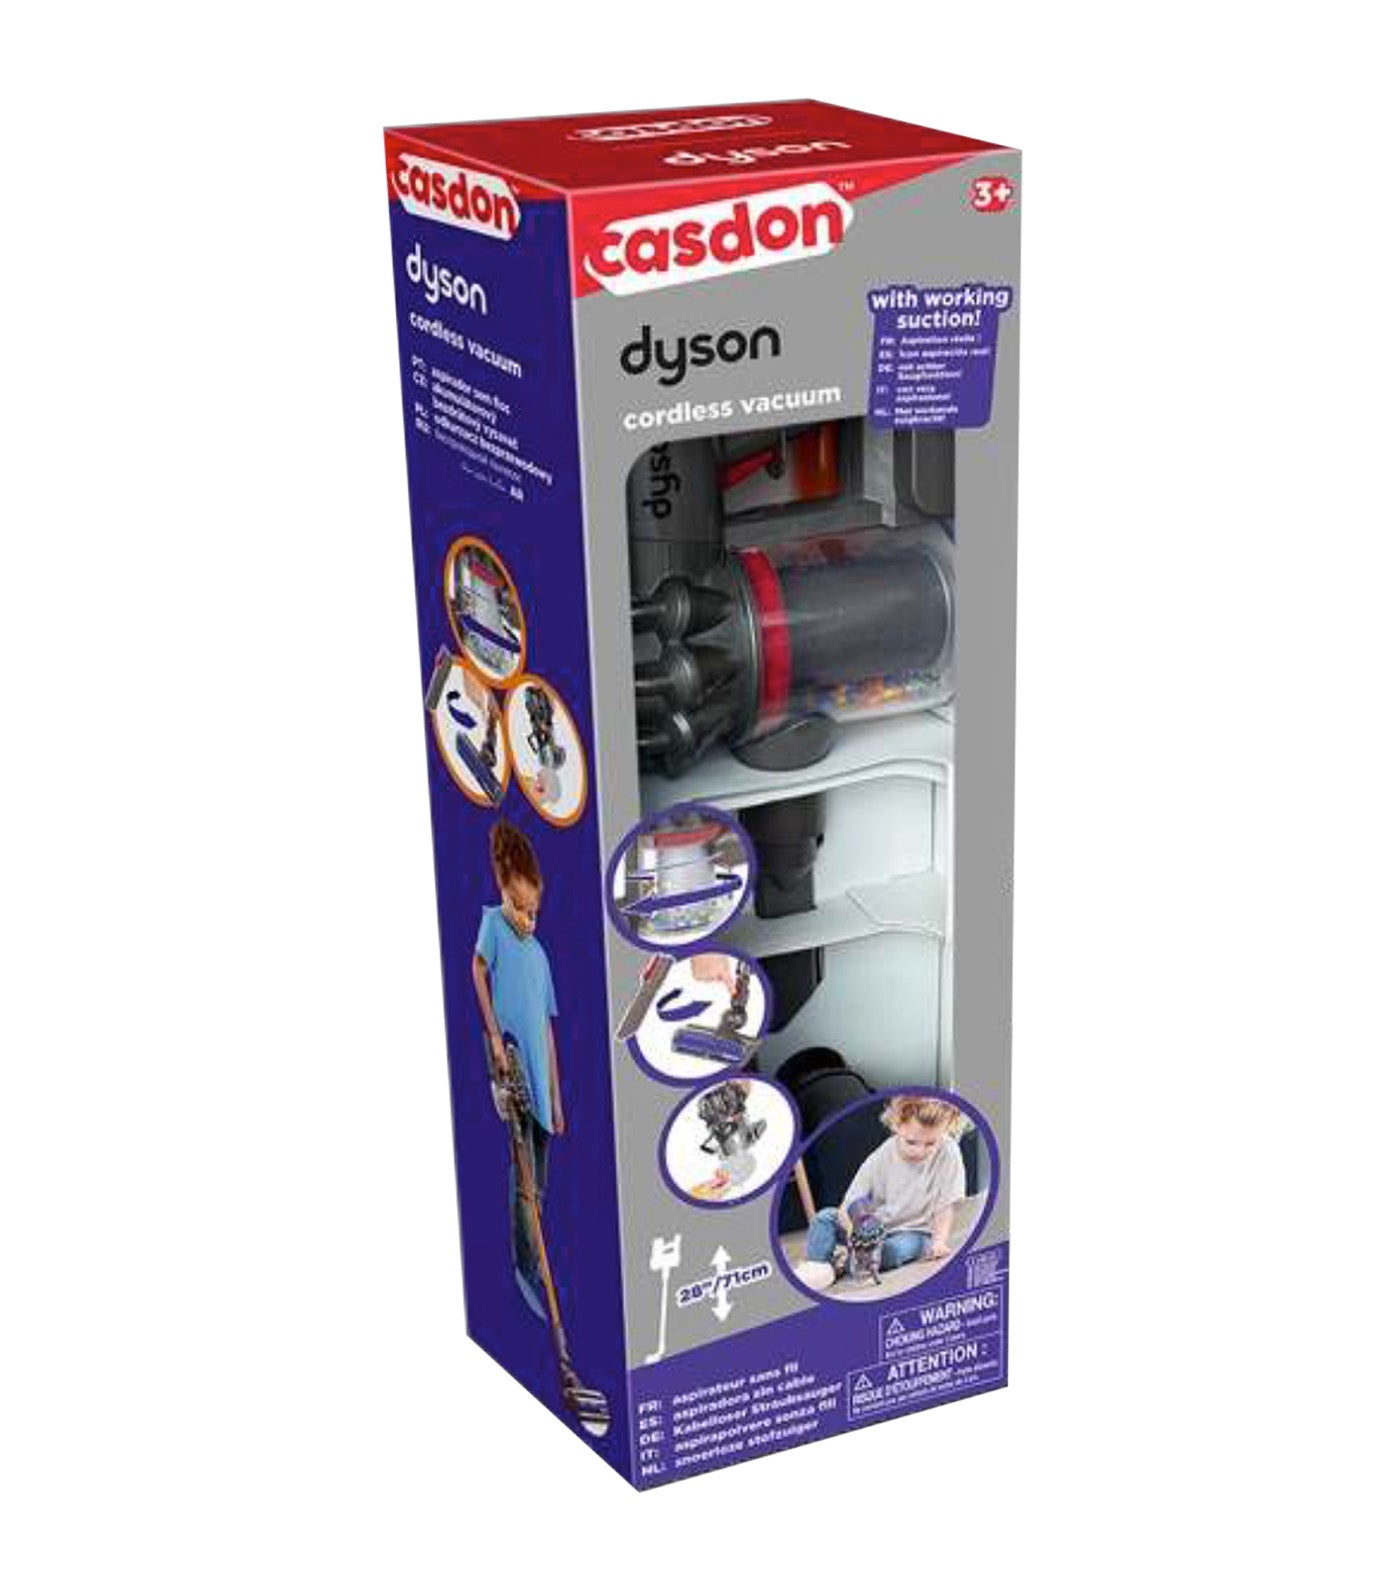 Casdon Dyson Cordless Vacuum Playset